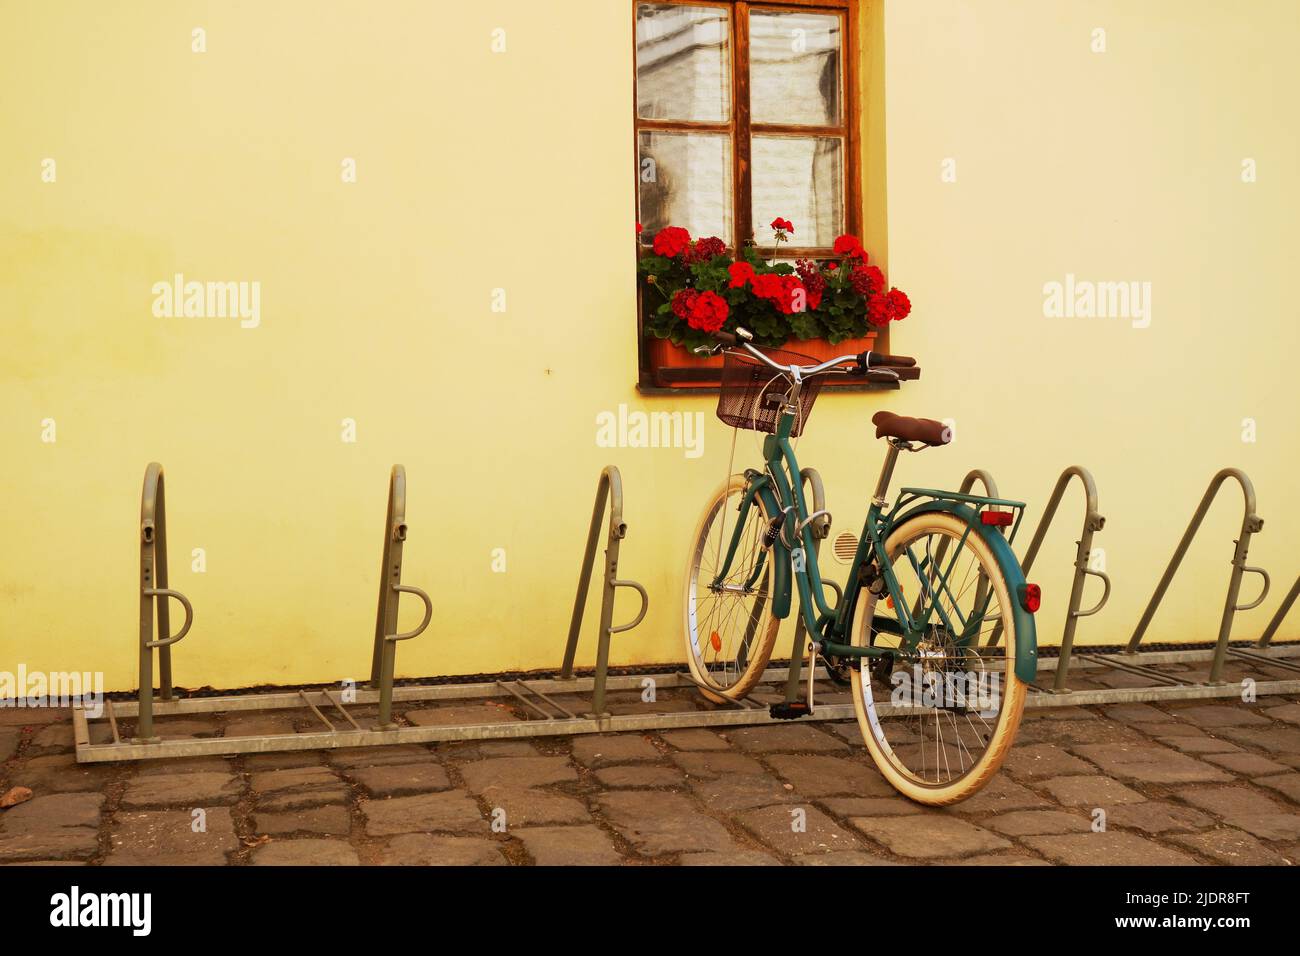 vélo vert garé par une fenêtre avec des fleurs rouges Banque D'Images